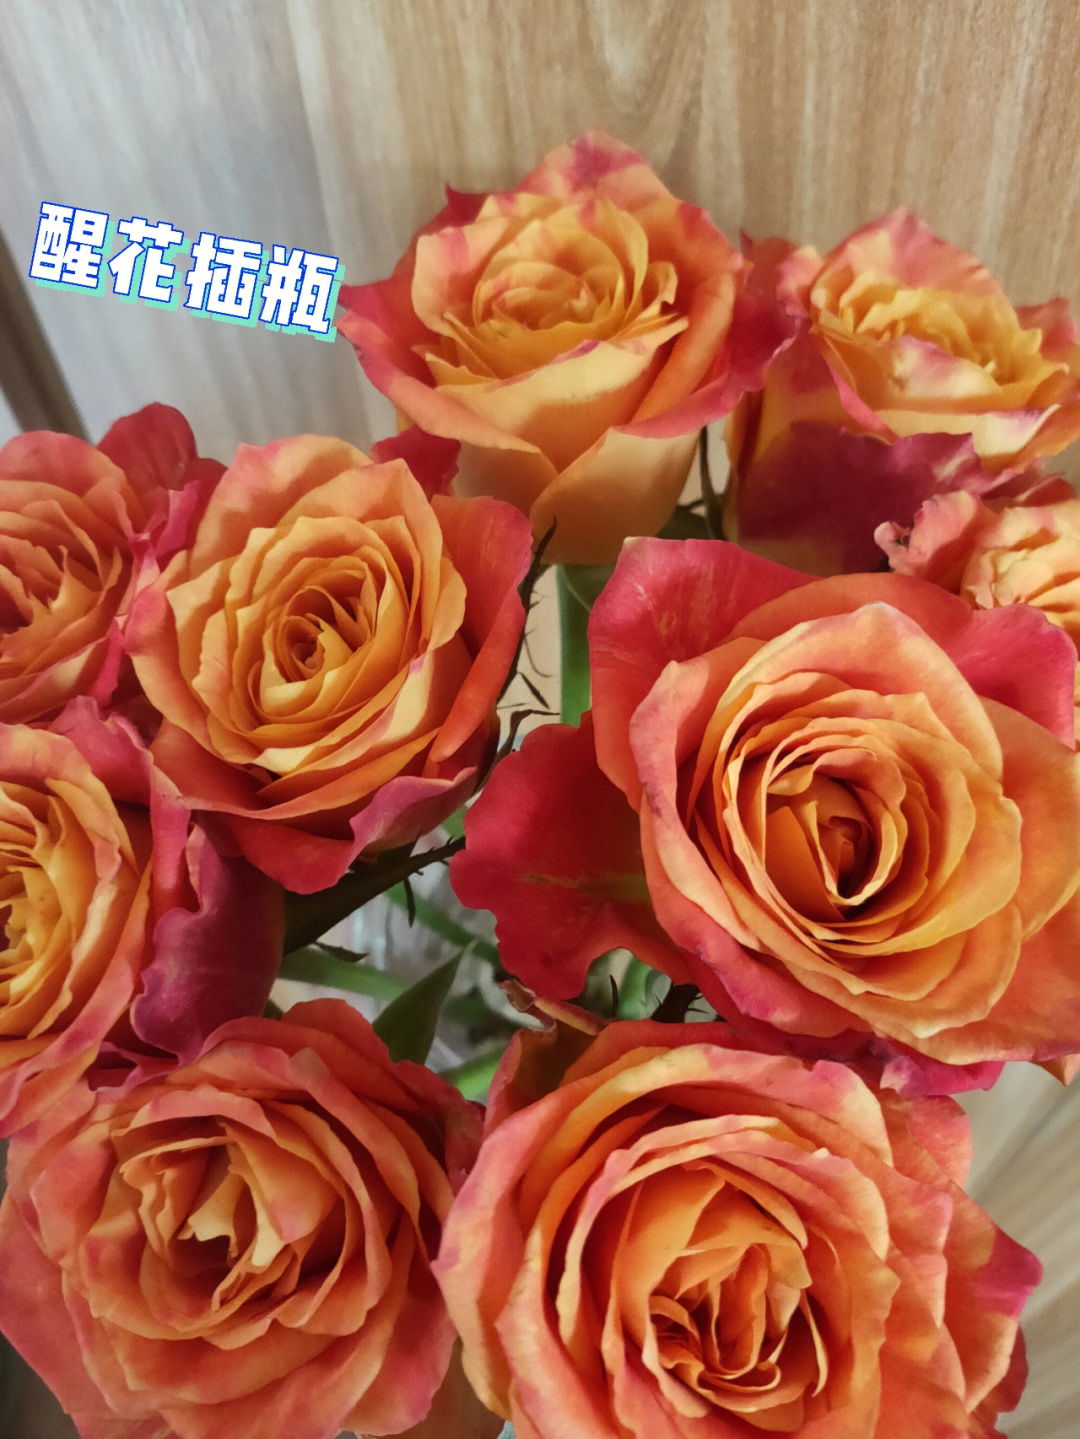 欢乐颂玫瑰 玫瑰花语图片